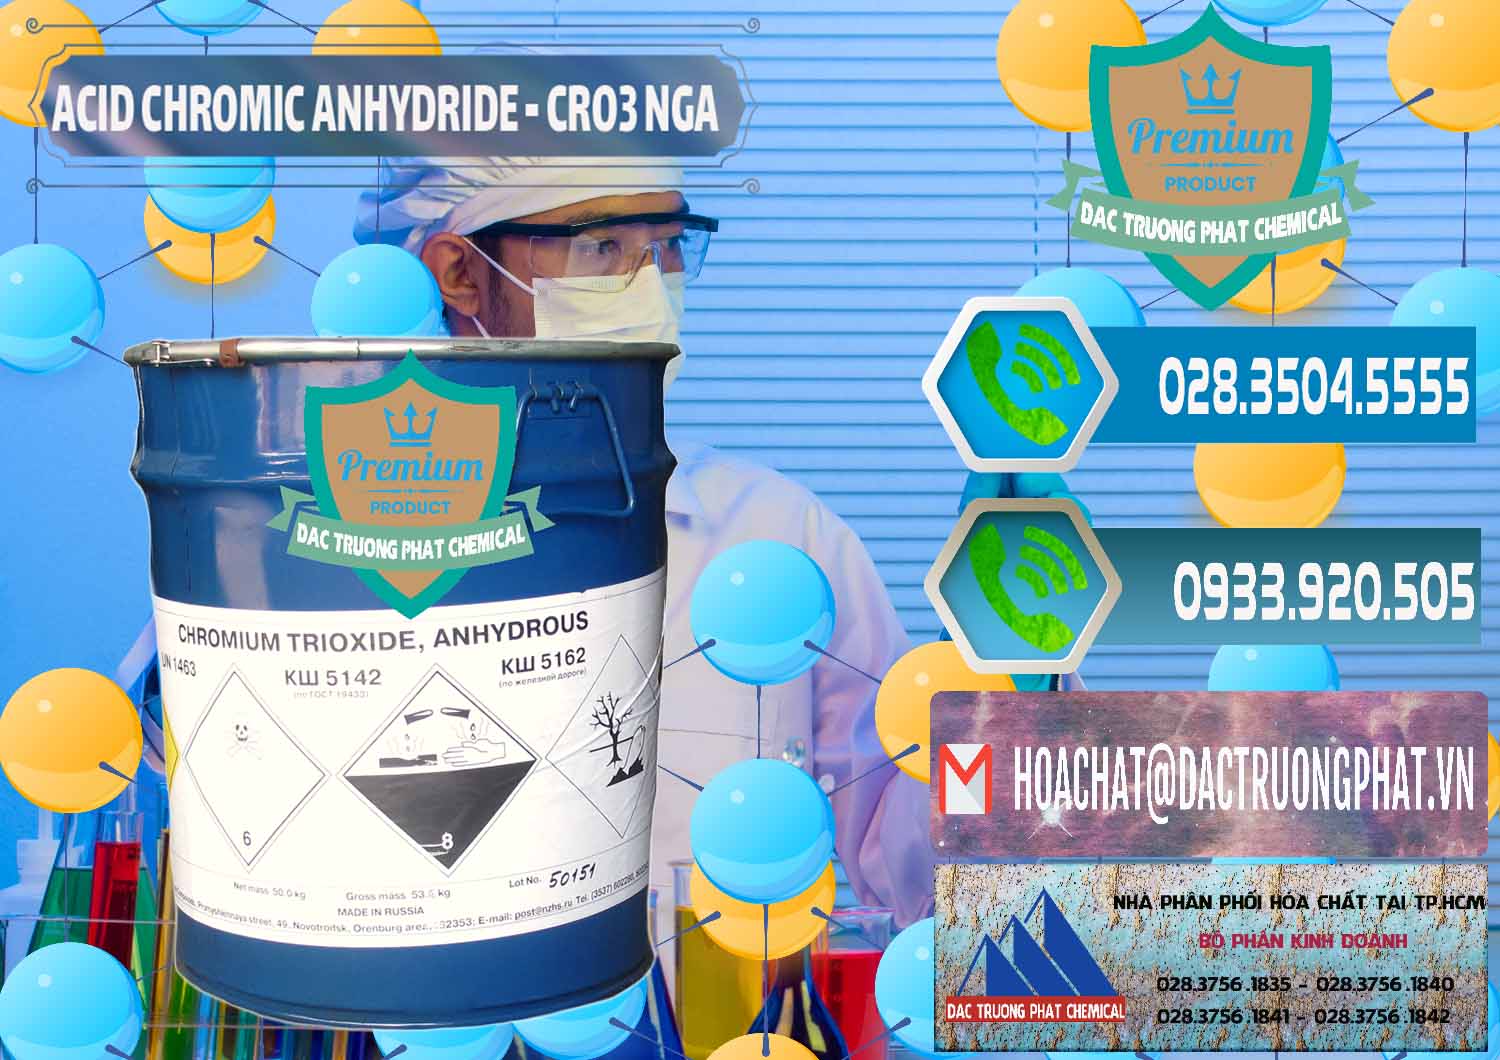 Cty chuyên phân phối _ bán Acid Chromic Anhydride - Cromic CRO3 Nga Russia - 0006 - Công ty cung cấp - nhập khẩu hóa chất tại TP.HCM - congtyhoachat.net